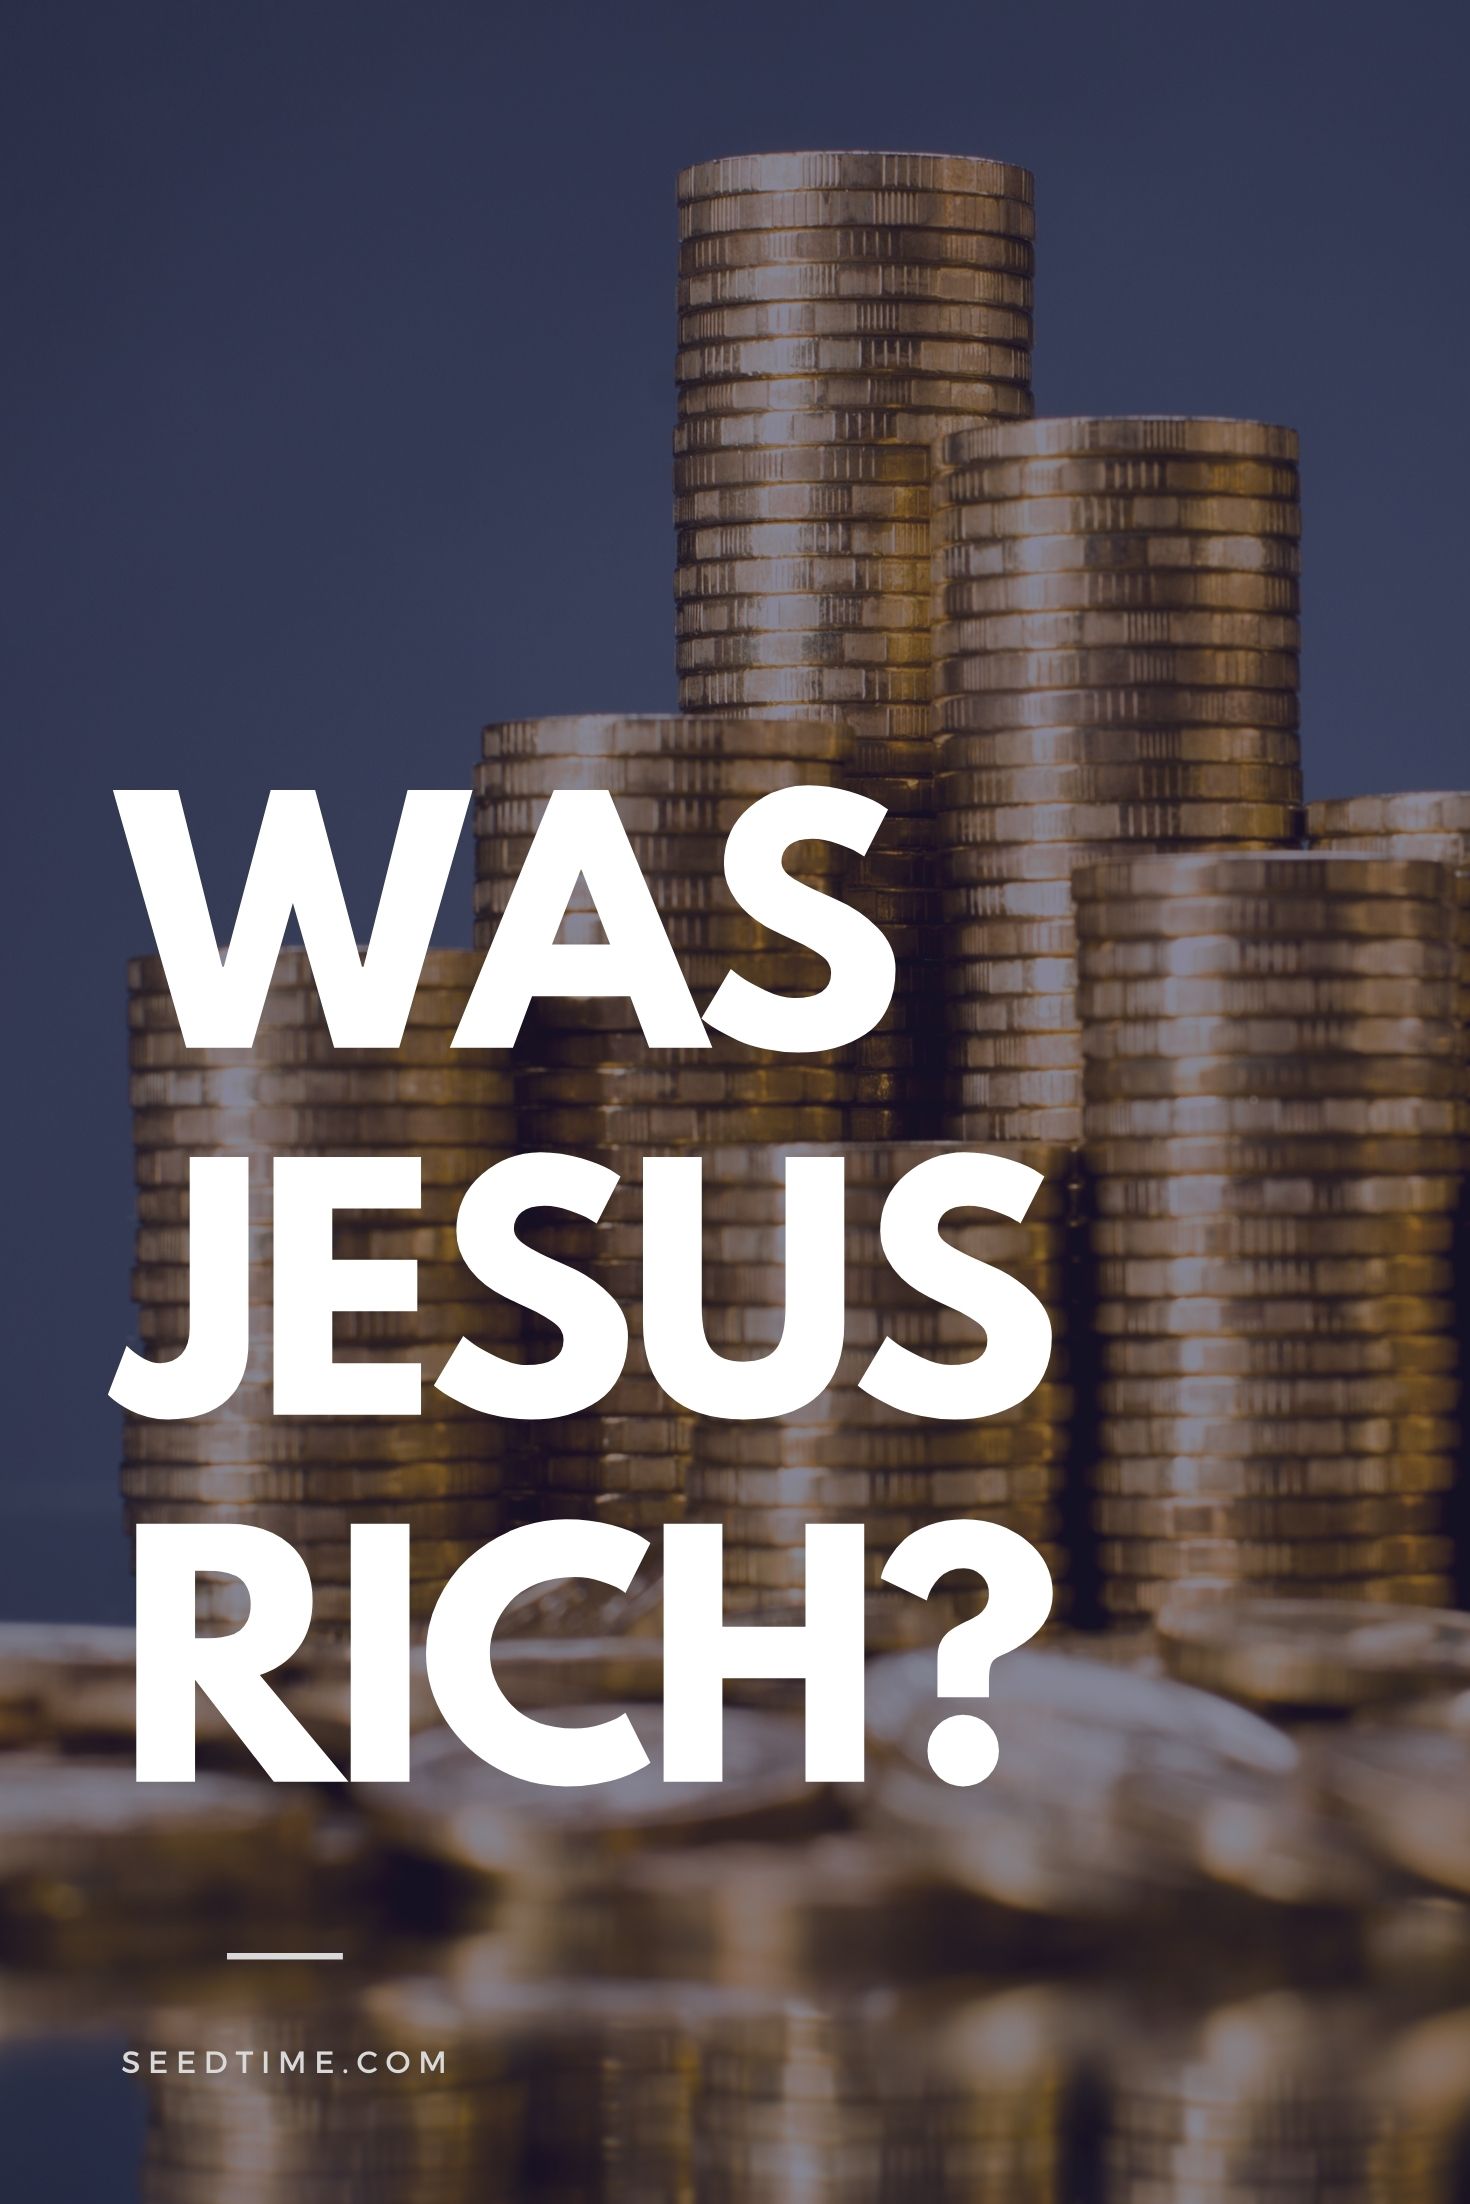 Was Jesus rich